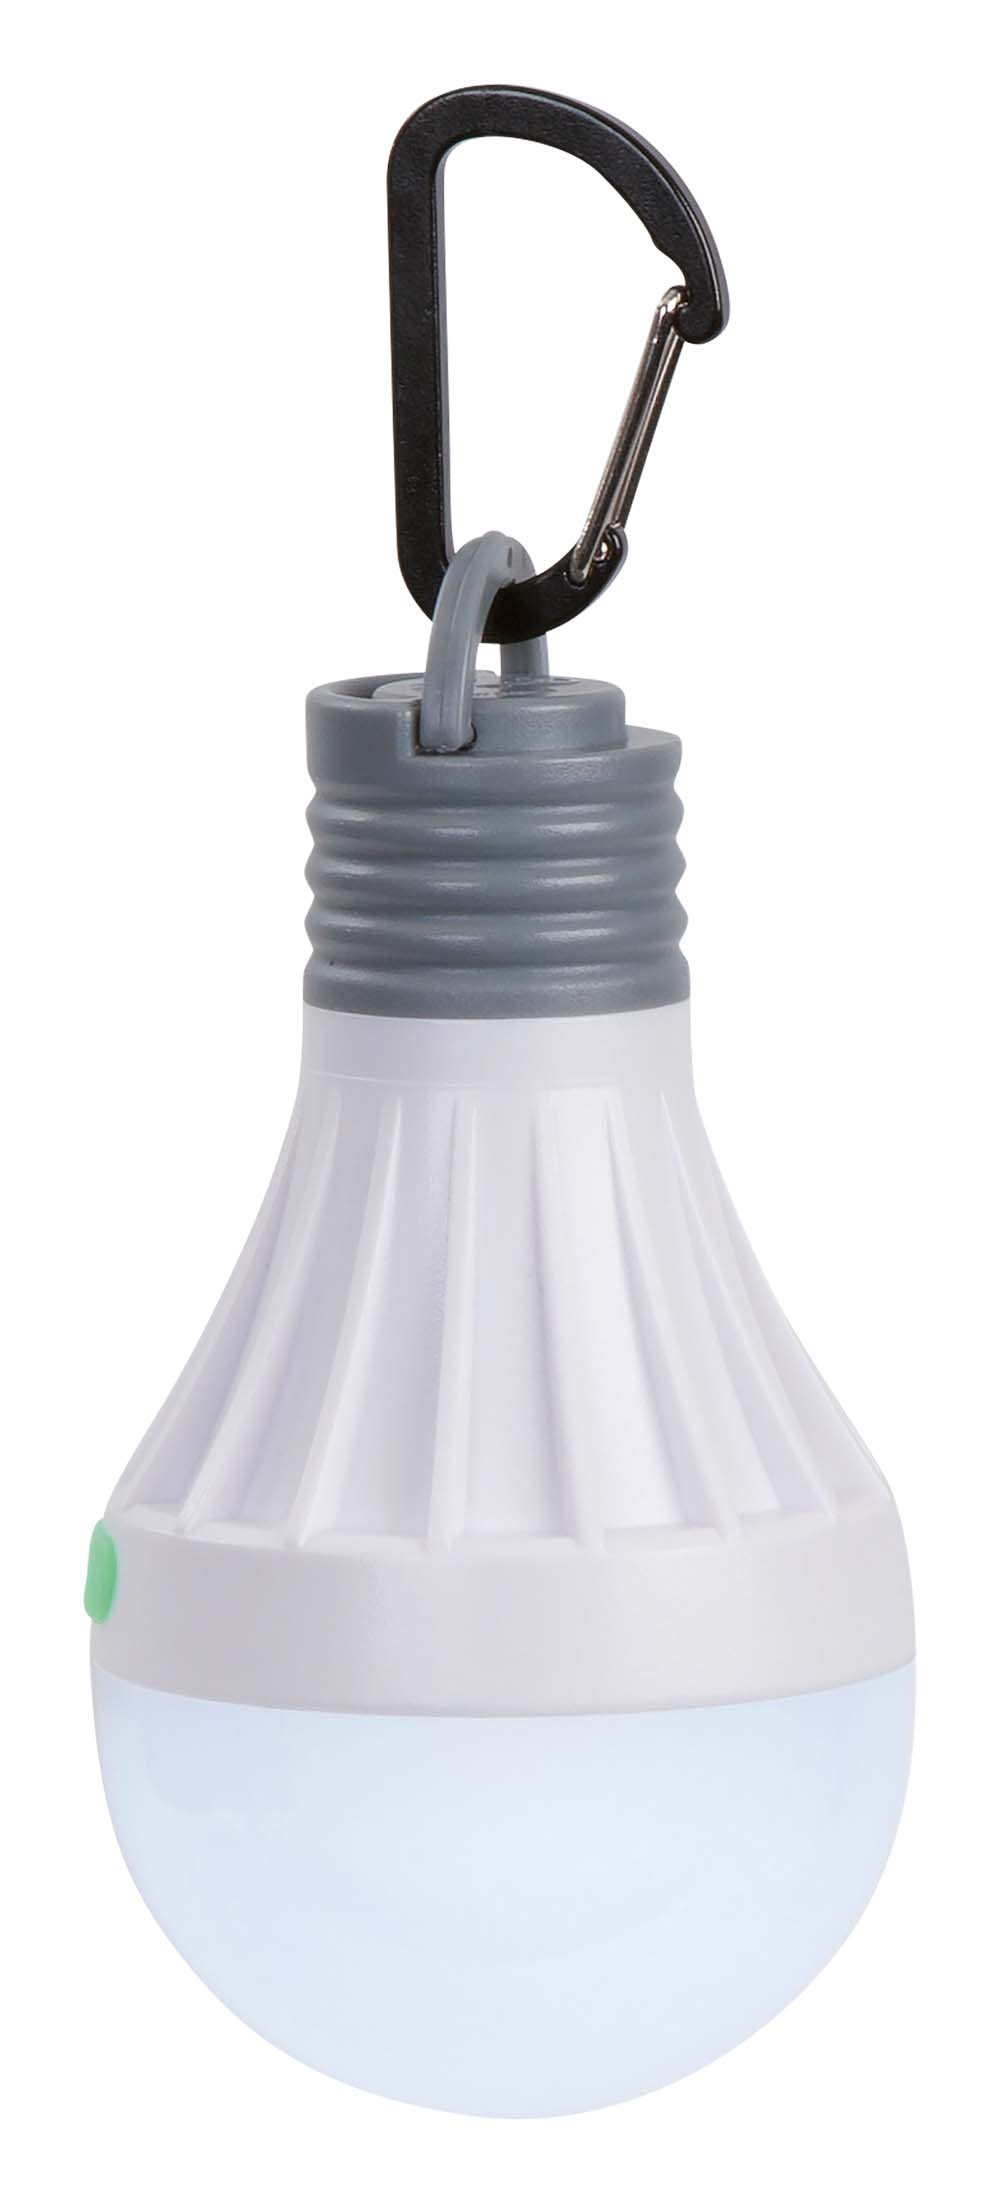 5818854 Een hanglamp in de vorm van een gloeilamp. Deze waterdichte hanglamp beschikt over een LED en is in 3 lichtstanden te gebruiken: 50%, 100% en knipperstand. De lamp is snel en gemakkelijk op te hangen met de karabiner, en kan ook met een magneet aan bijvoorbeeld een ijzeren wand bevestigd worden. Werkt op 1x AA batterij (niet inbegrepen). Brandduur: 20-8 uur. Lichtopbrengst: 15-35 lumen.